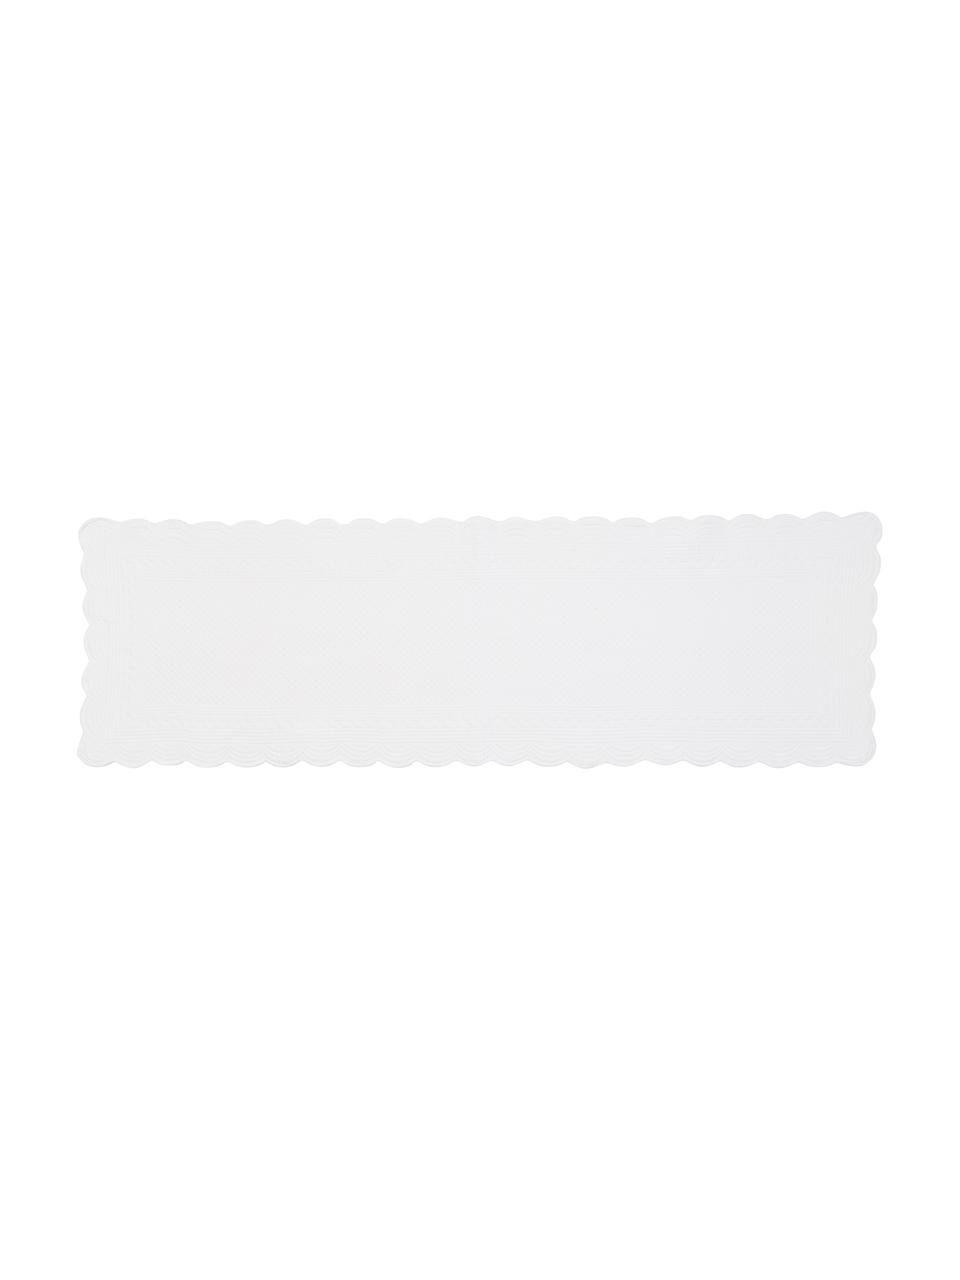 Baumwoll-Tischläufer Boutis mit Verzierungen und runden Kanten, Baumwolle, Weiss, 50 x 150 cm